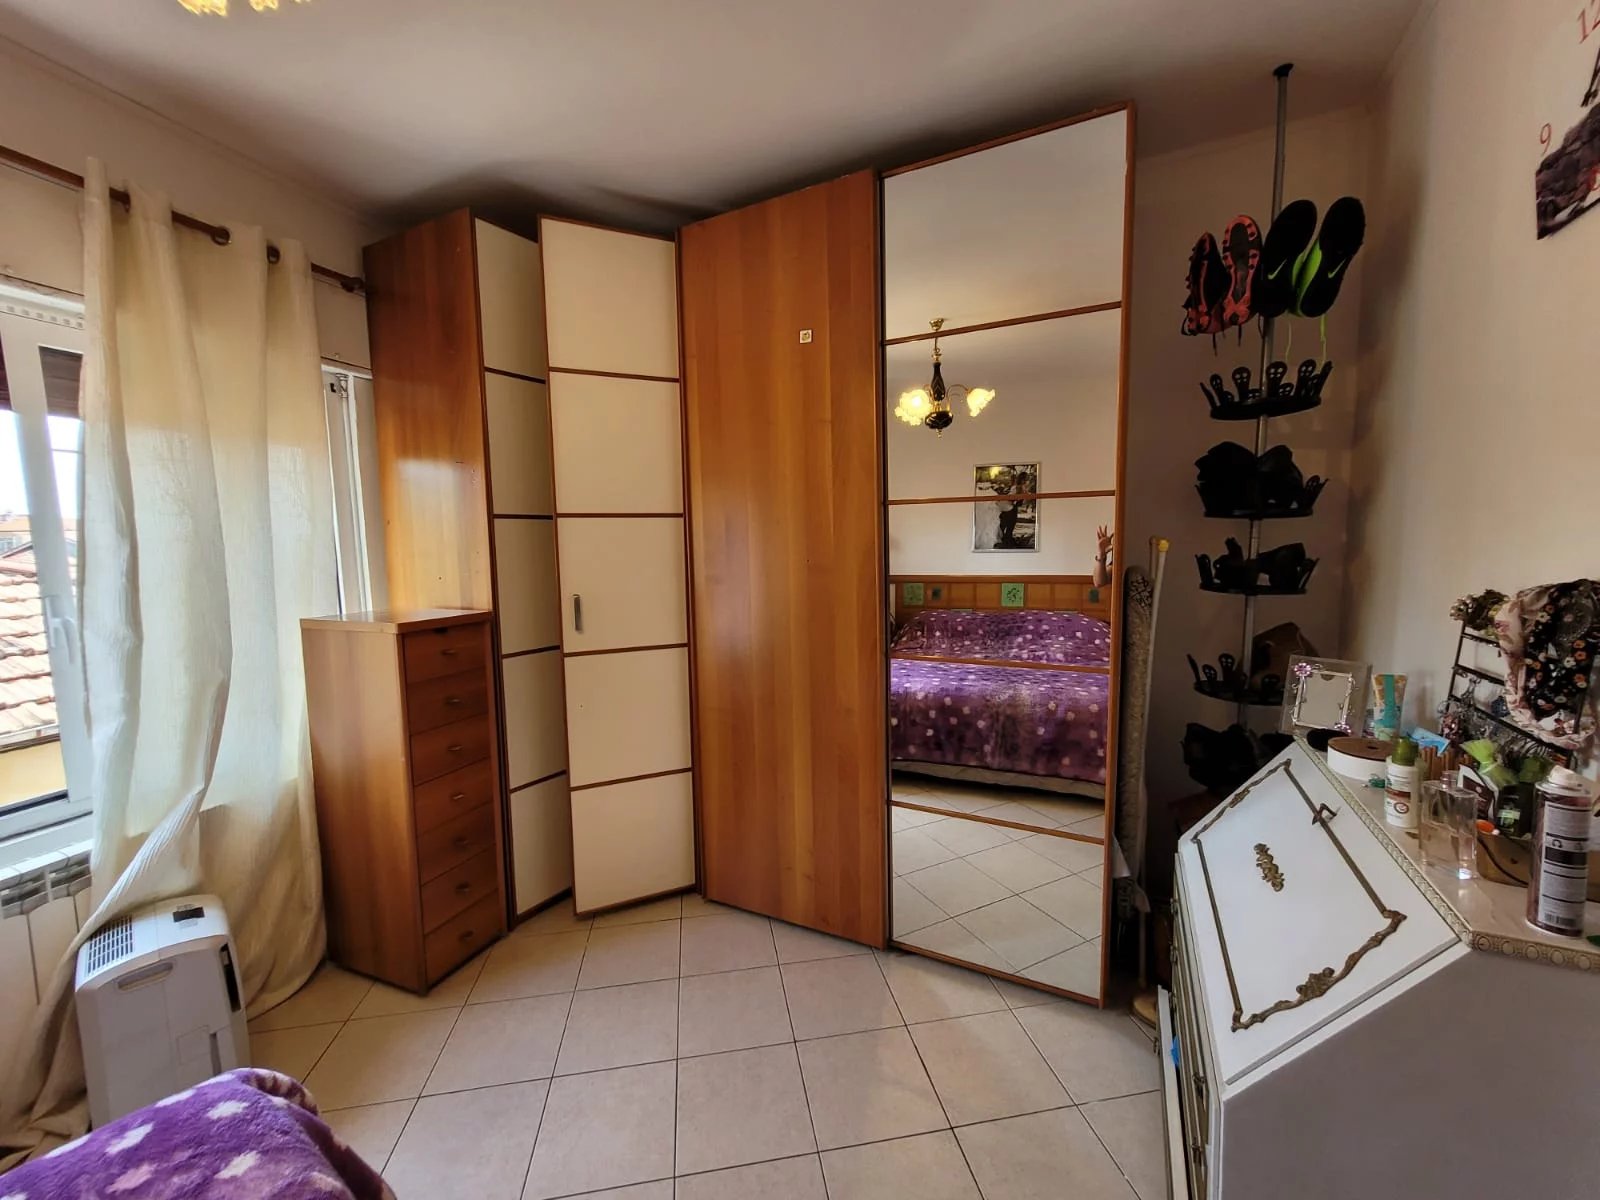 Sale Apartment villa - Ventimiglia - Italy